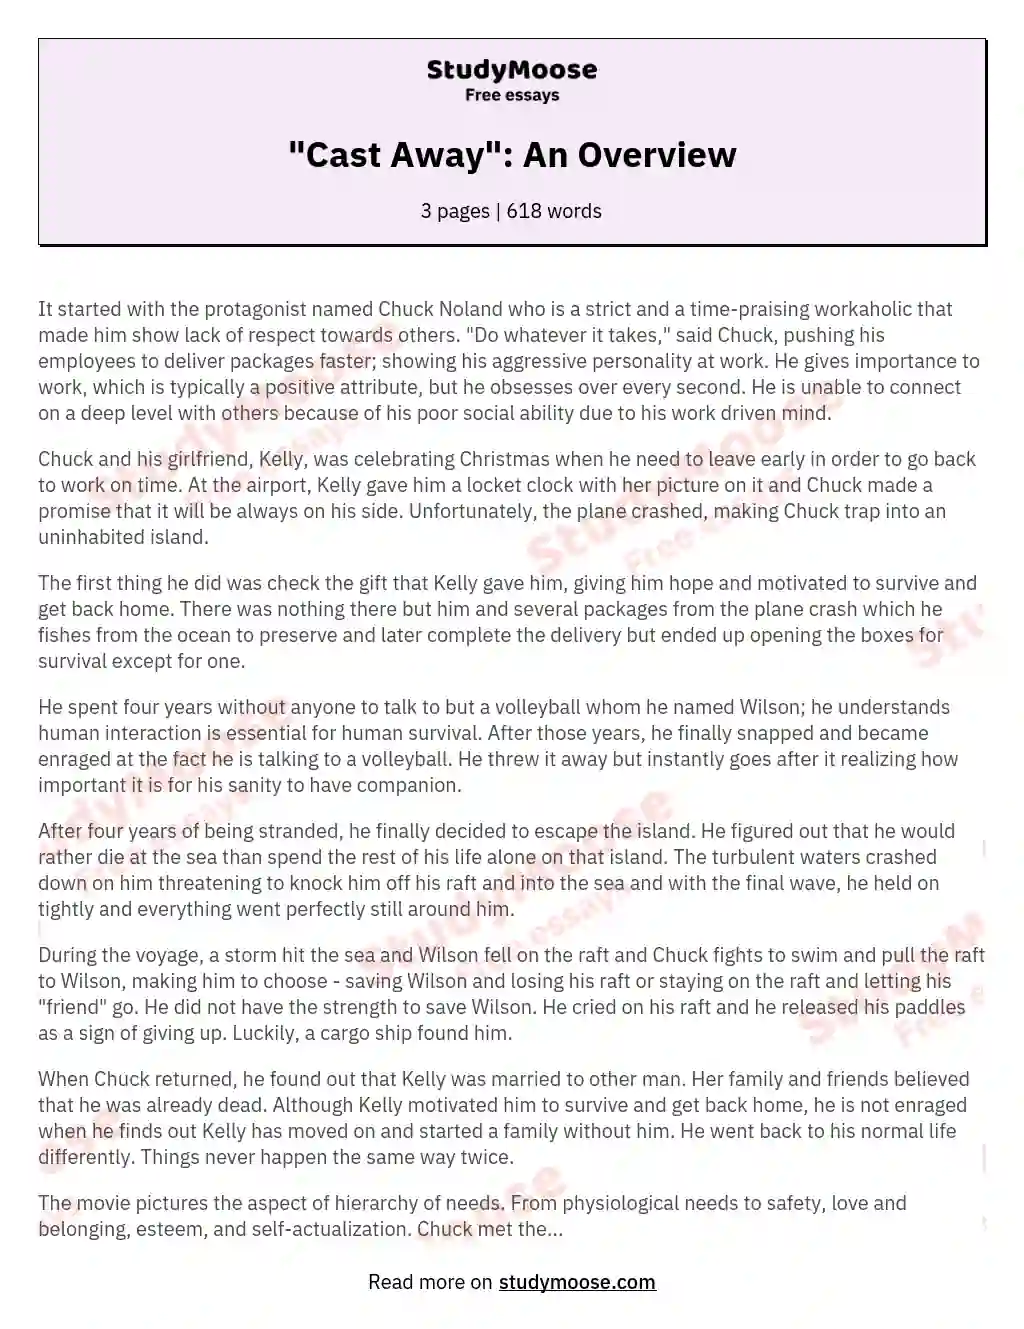 "Cast Away": An Overview essay